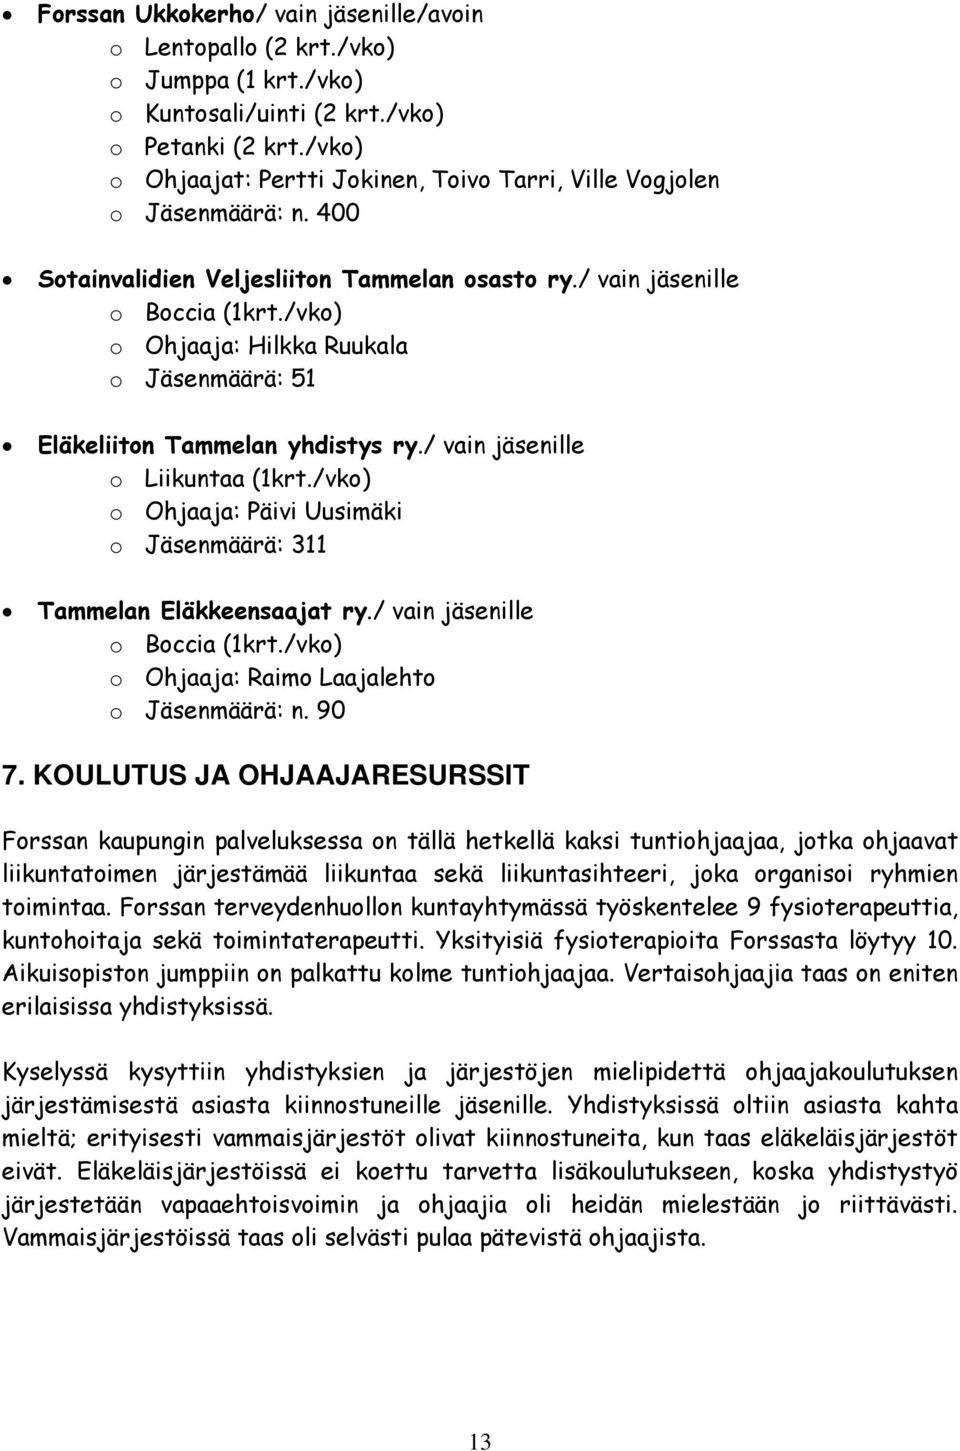 /vko) o Ohjaaja: Hilkka Ruukala o Jäsenmäärä: 51 Eläkeliiton Tammelan yhdistys ry./ vain jäsenille o Liikuntaa (1krt./vko) o Ohjaaja: Päivi Uusimäki o Jäsenmäärä: 311 Tammelan Eläkkeensaajat ry.